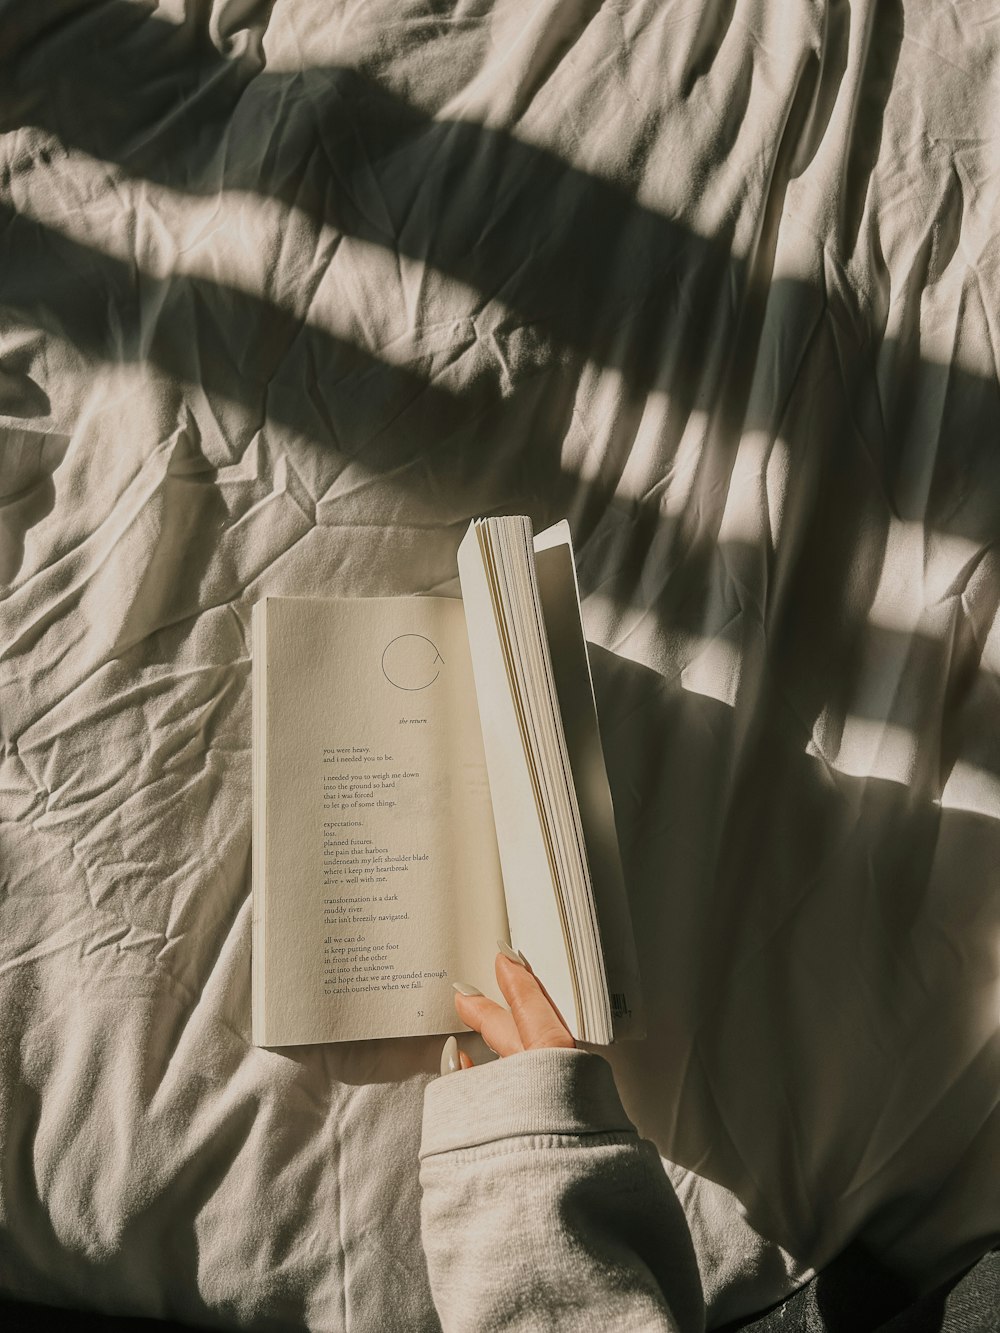 uma pessoa está lendo um livro em uma cama